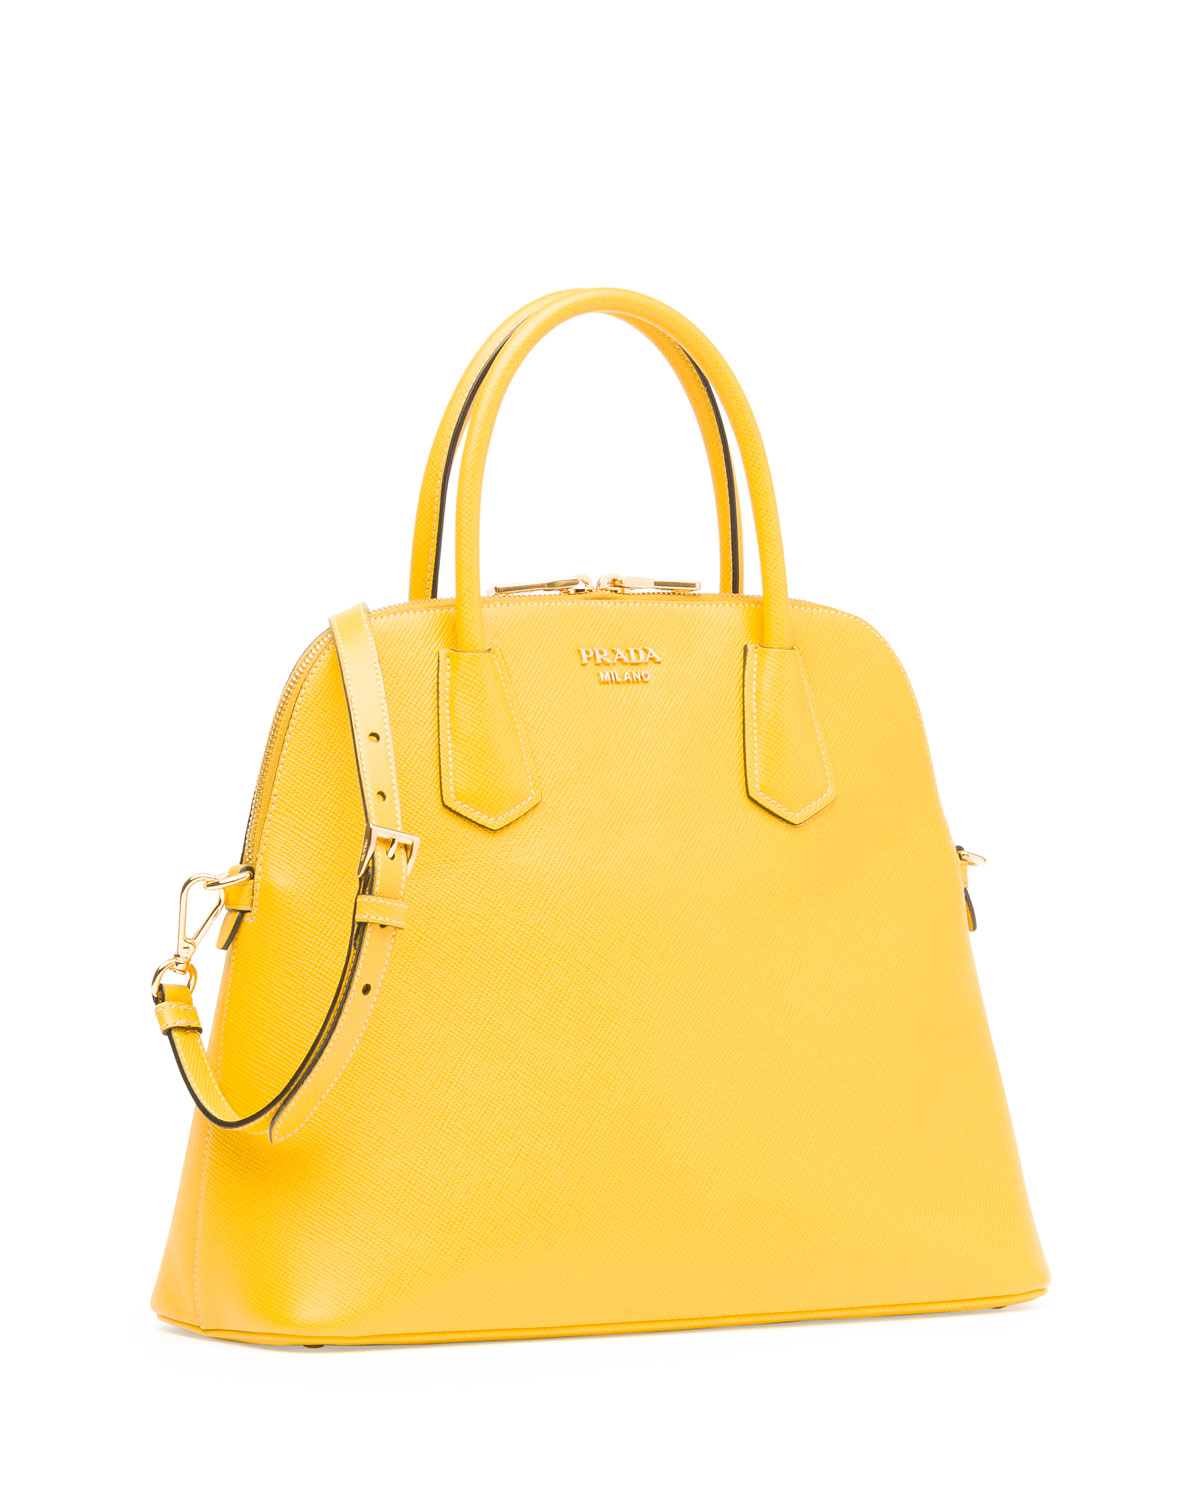 Prada Saffiano Cuir Dome Satchel Bag in Yellow | Lyst